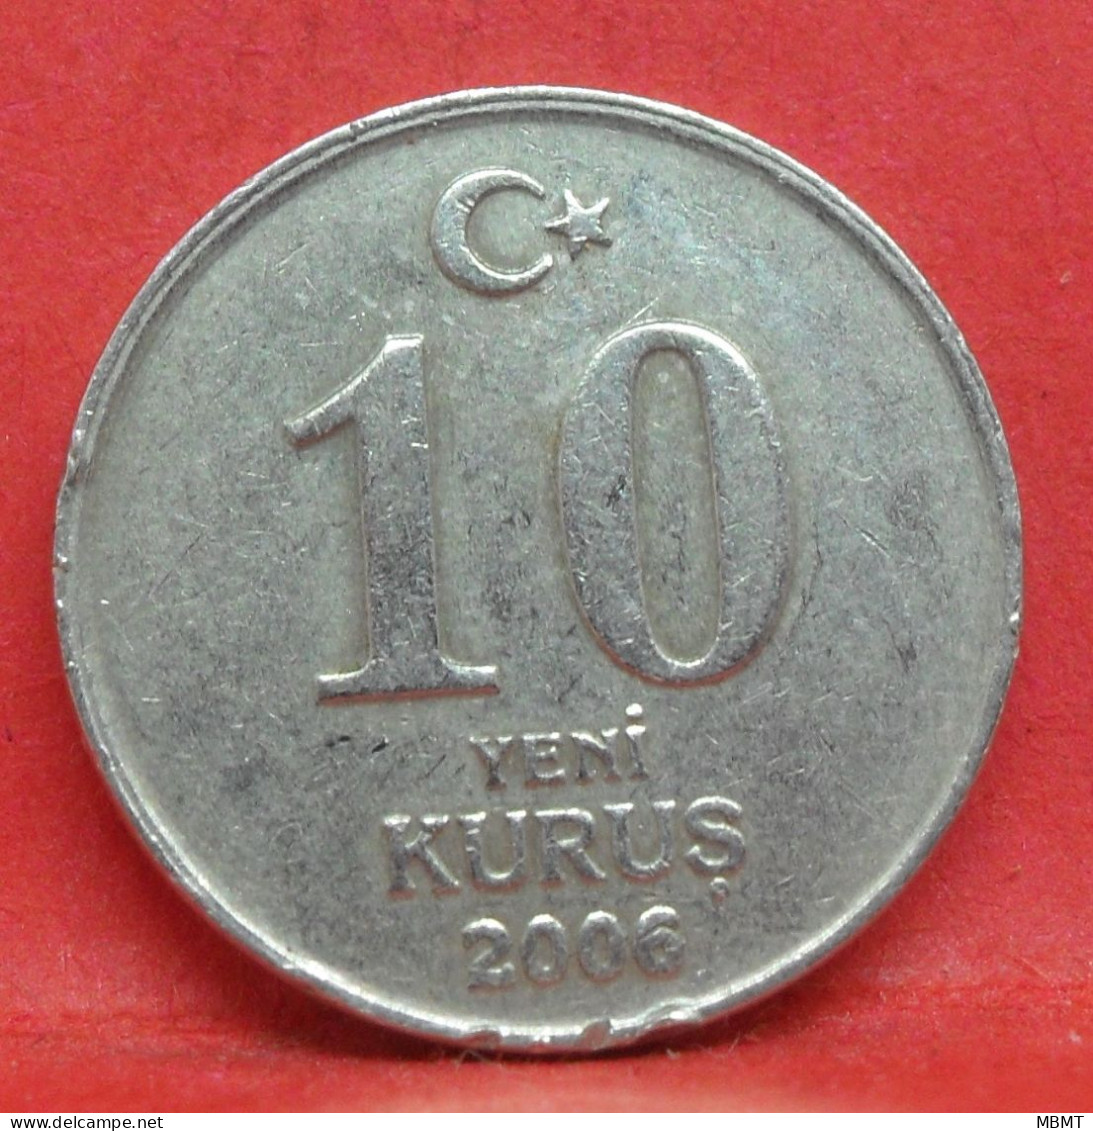 10 Kurus 2006 - TB - Pièce De Monnaie Turquie - Article N°4984 - Turquie